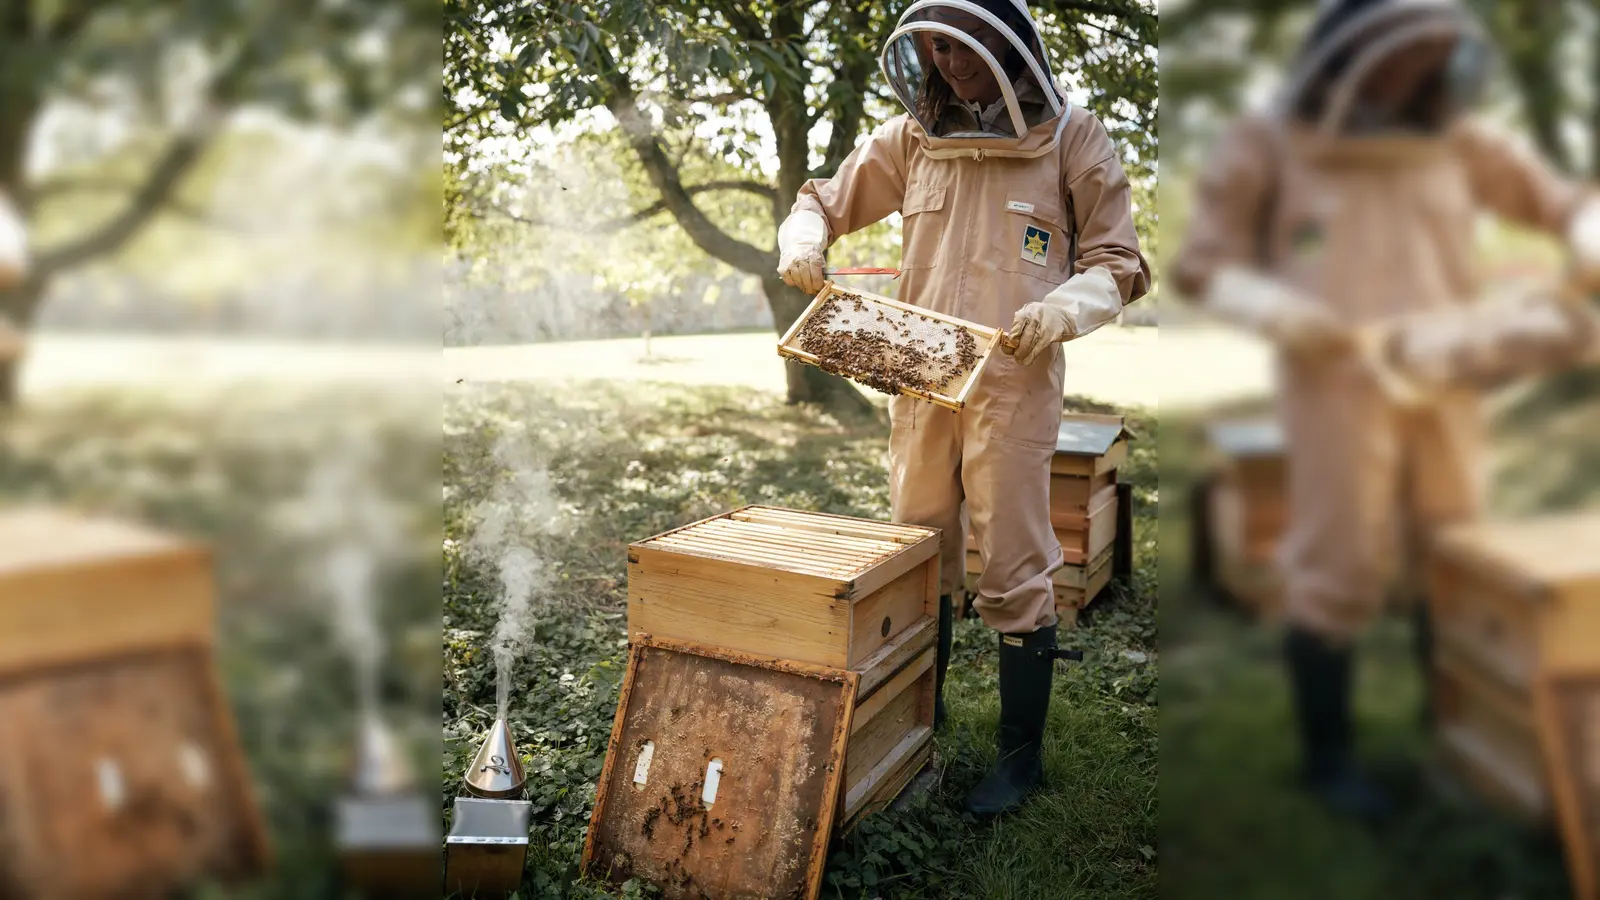 Prinzessin Kate im letzten Sommer bei der  Pflege eines Bienenstocks in den Gärten von Anmer Hall. (Foto: Matt Porteous/Kensington Palace/PA Media/dpa)